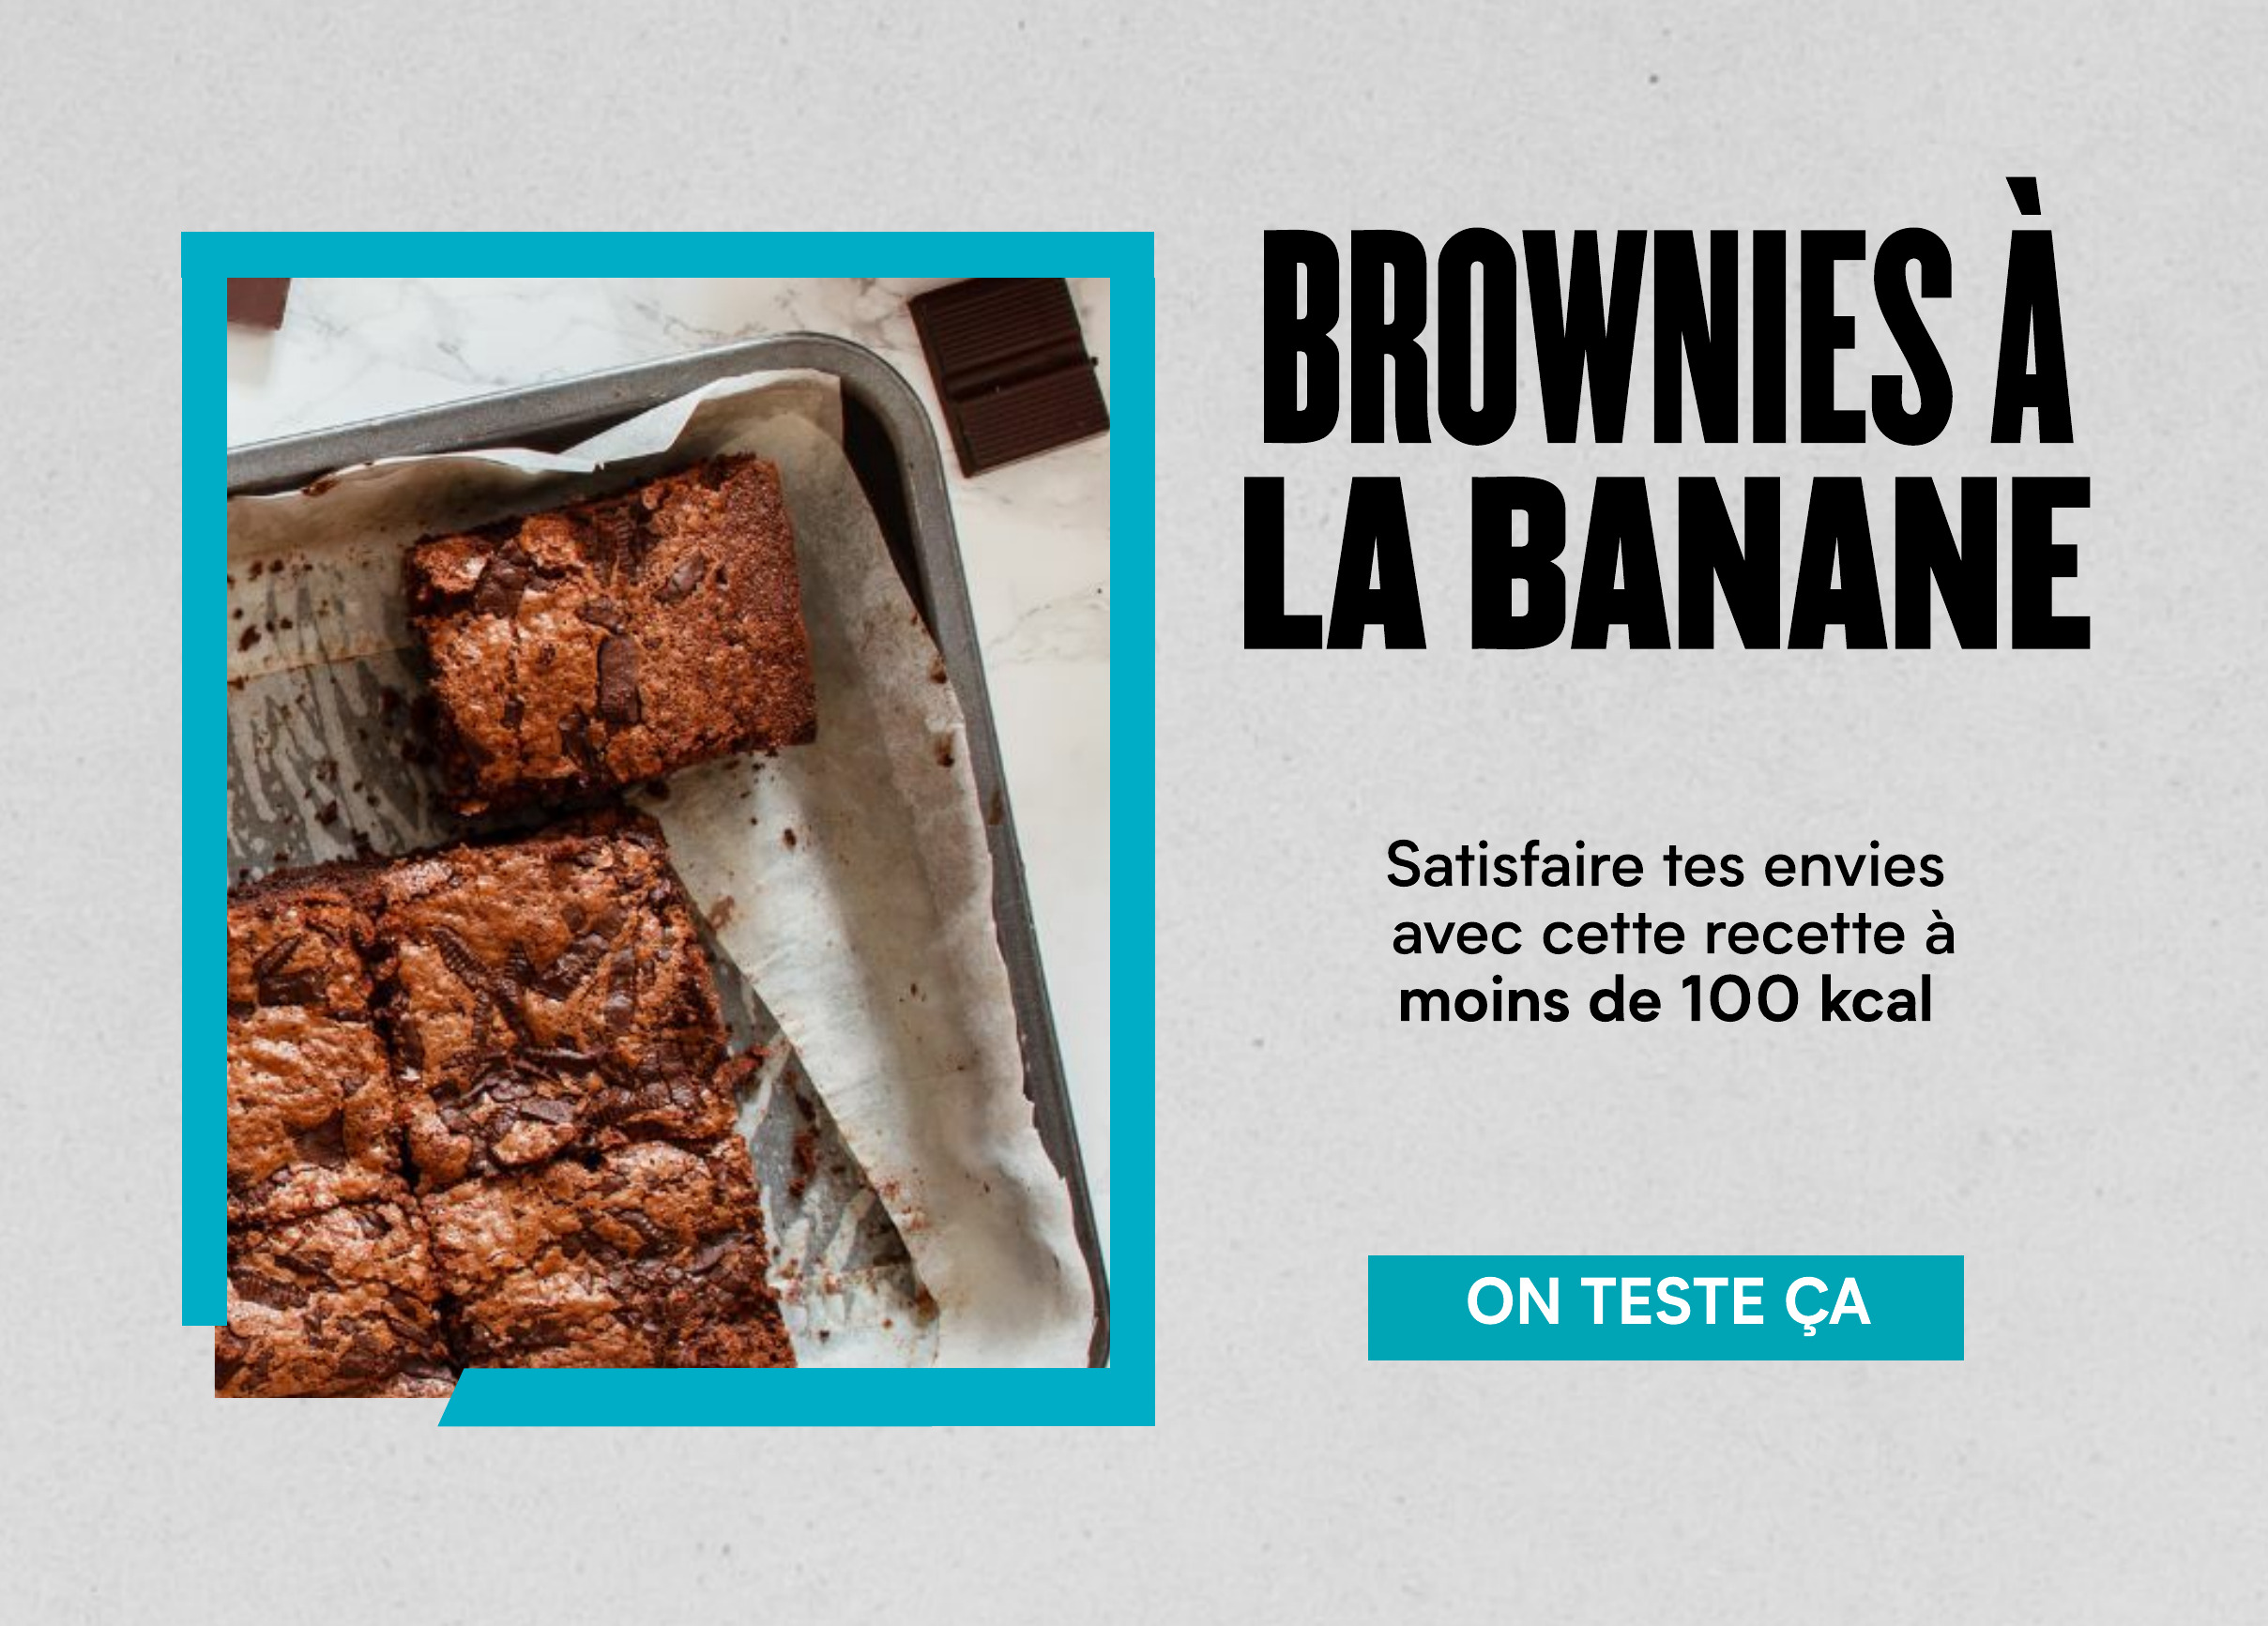 ' BROWNIES A LA BANANE Satisfaire tes envies avec cette recette a moins de 100 kcal ON TESTE CA 